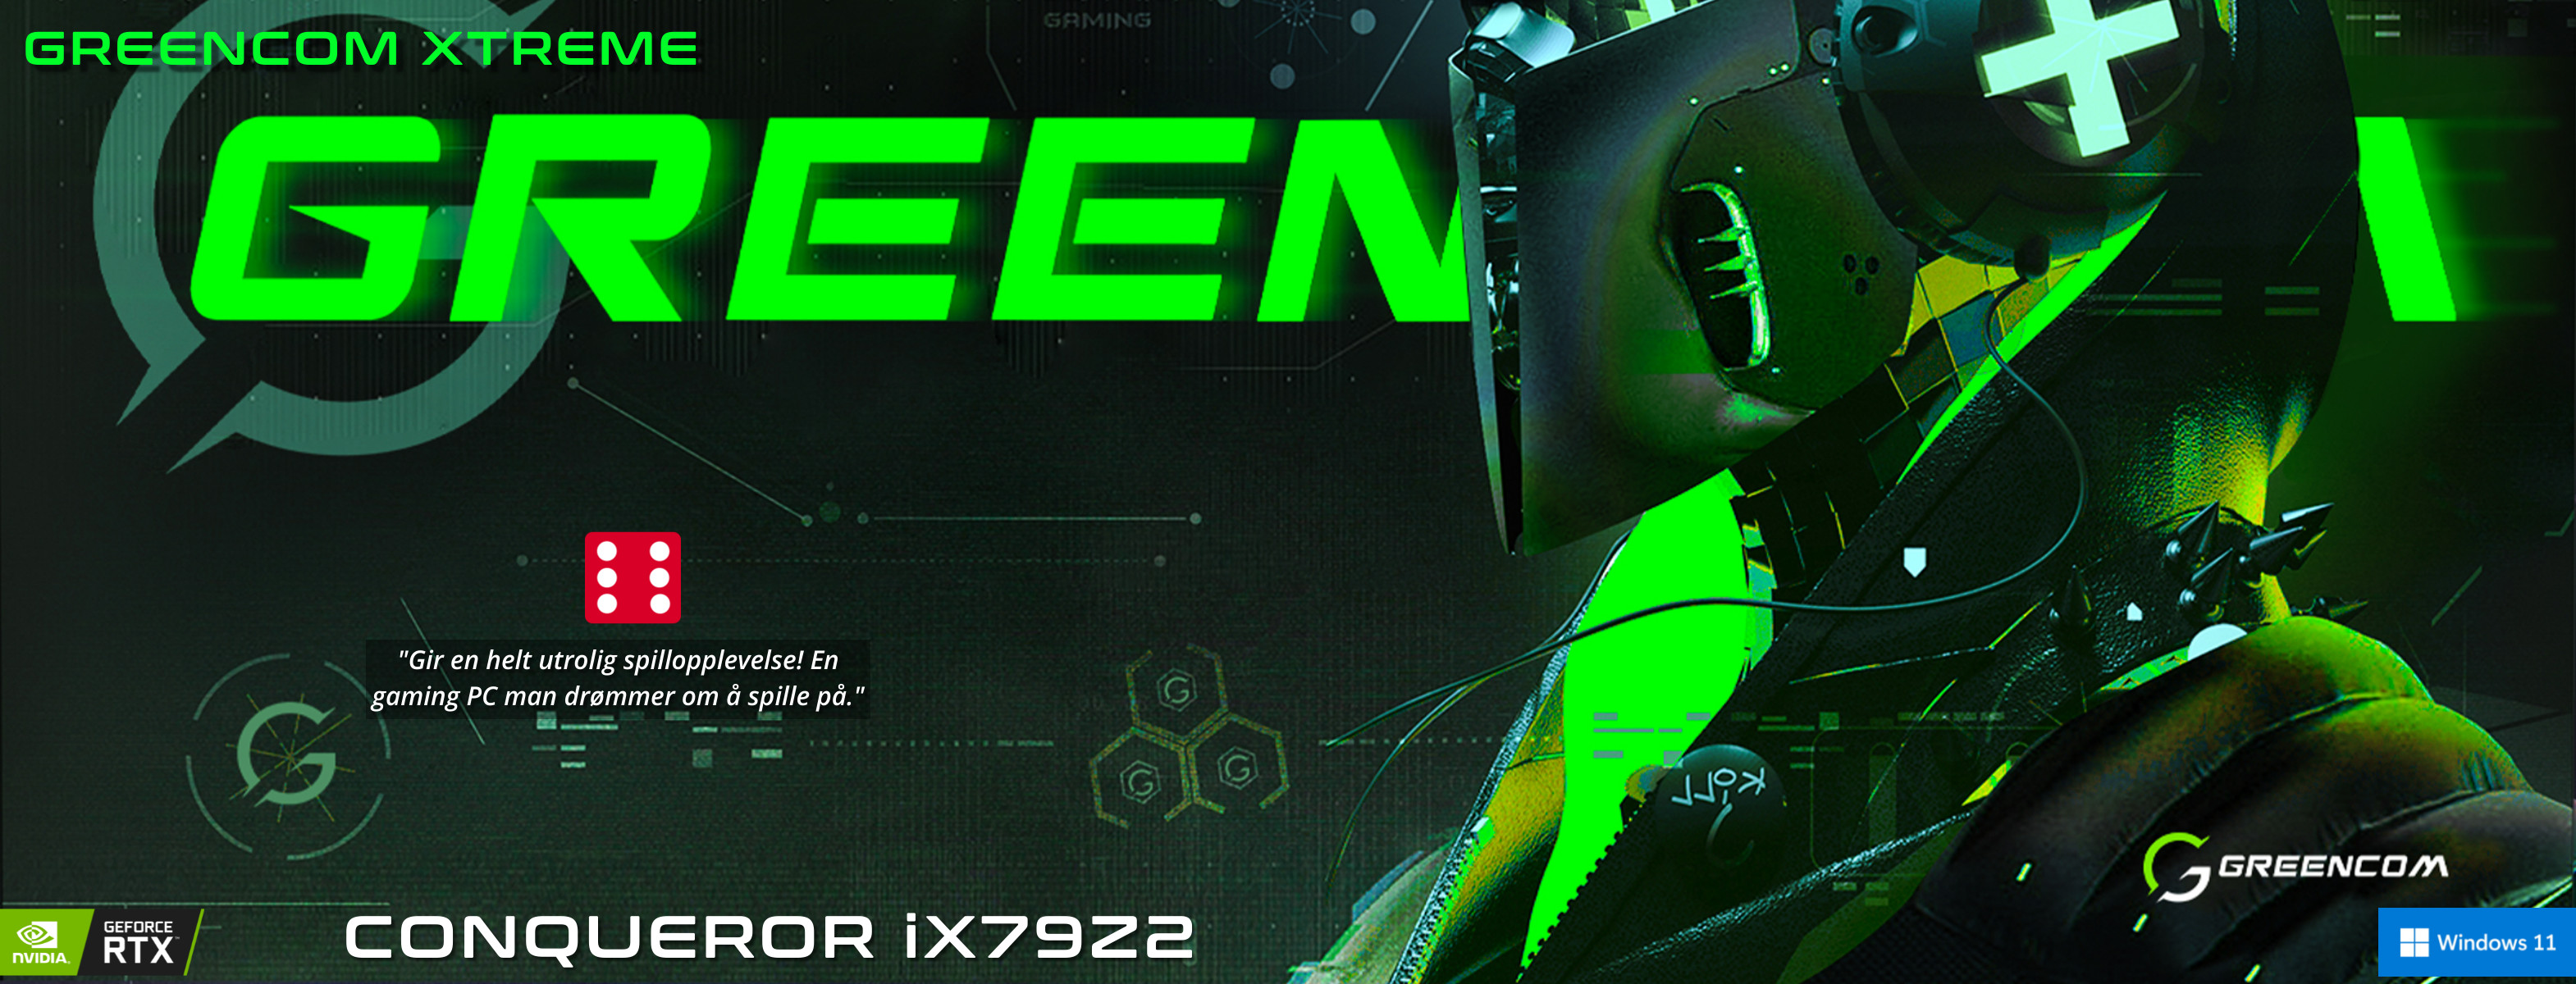 Greencom CONQUEROR iX79Z2